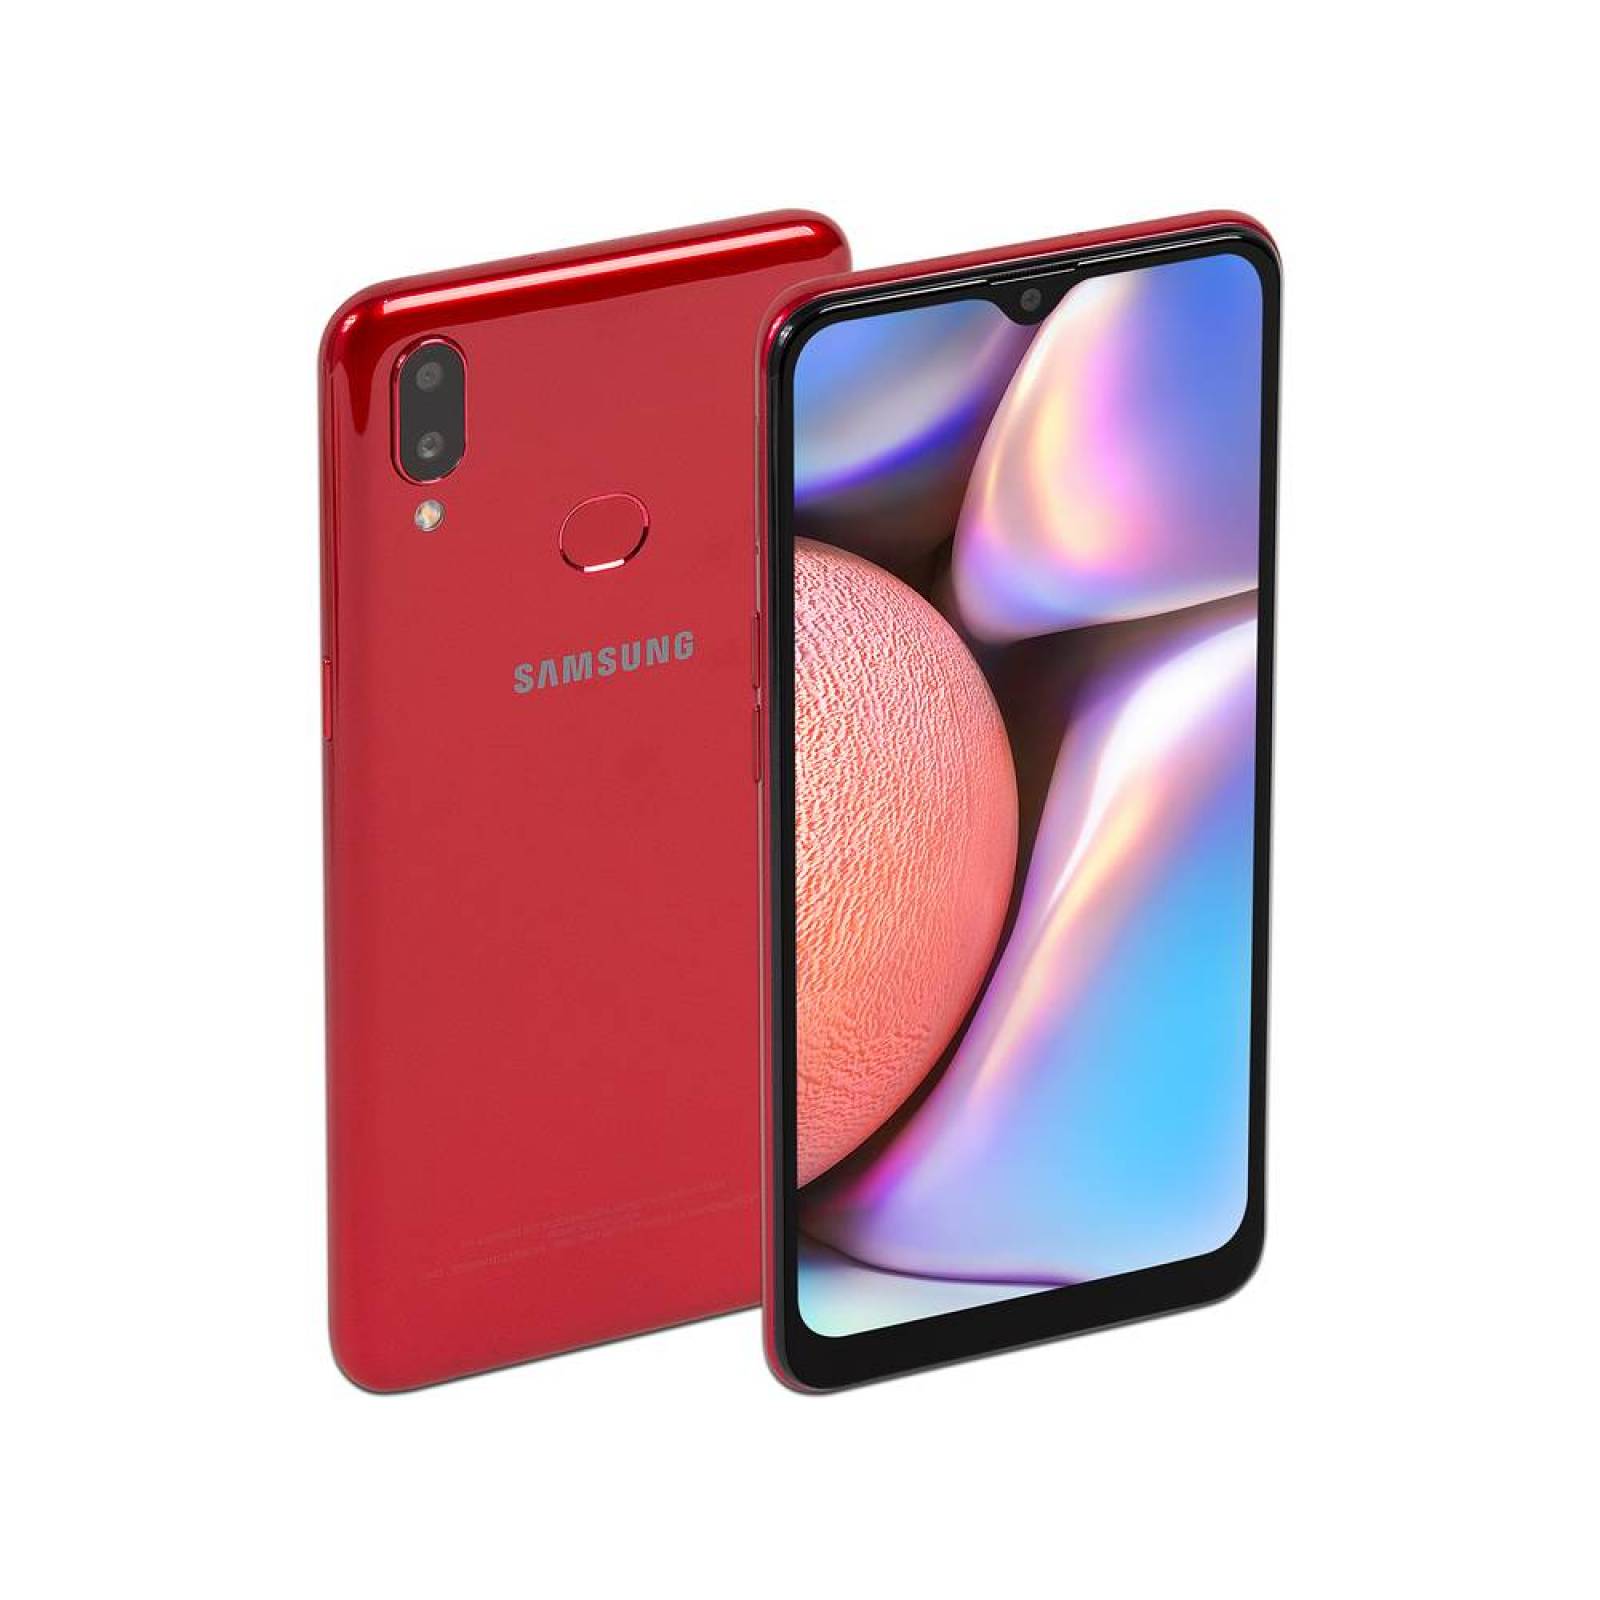 Smartphone Samsung Galaxy A10s Procesador Octa core hasta 1.50GHz Memoria RAM de 2GB Almacenamiento de 32GB Pantalla de 6.1 pulgadas Red Bluetooth Wi-Fi 4G CÃ¡mara principal de 13 MP Android 9.0